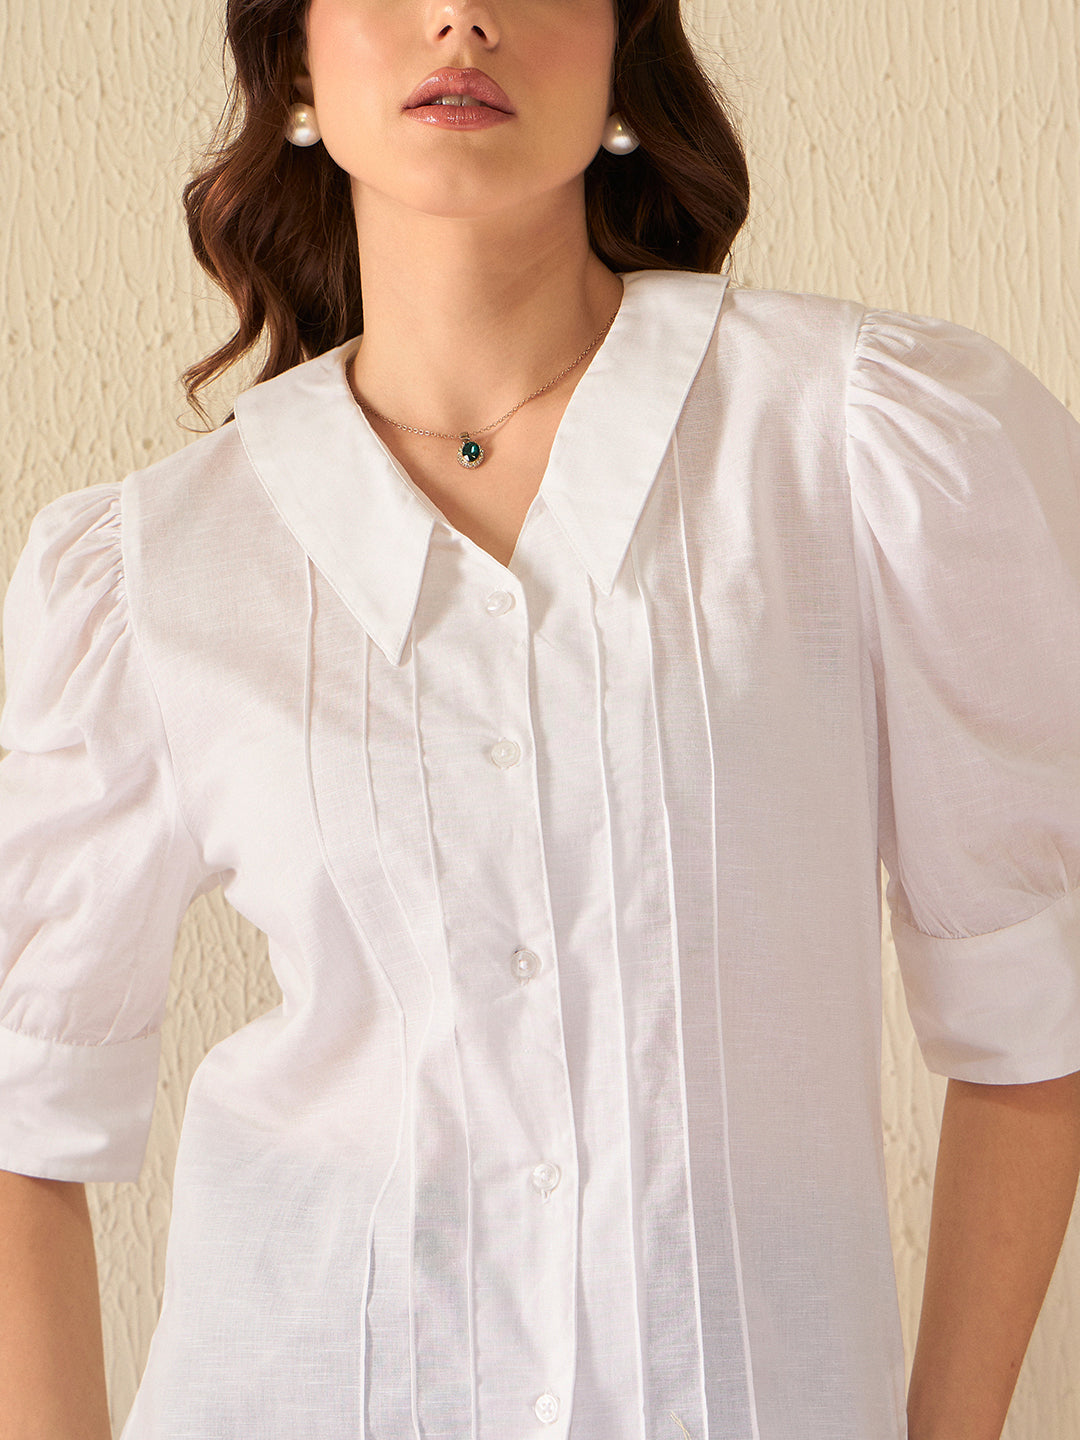 Dennison White Pointed Spread Collar Shirt